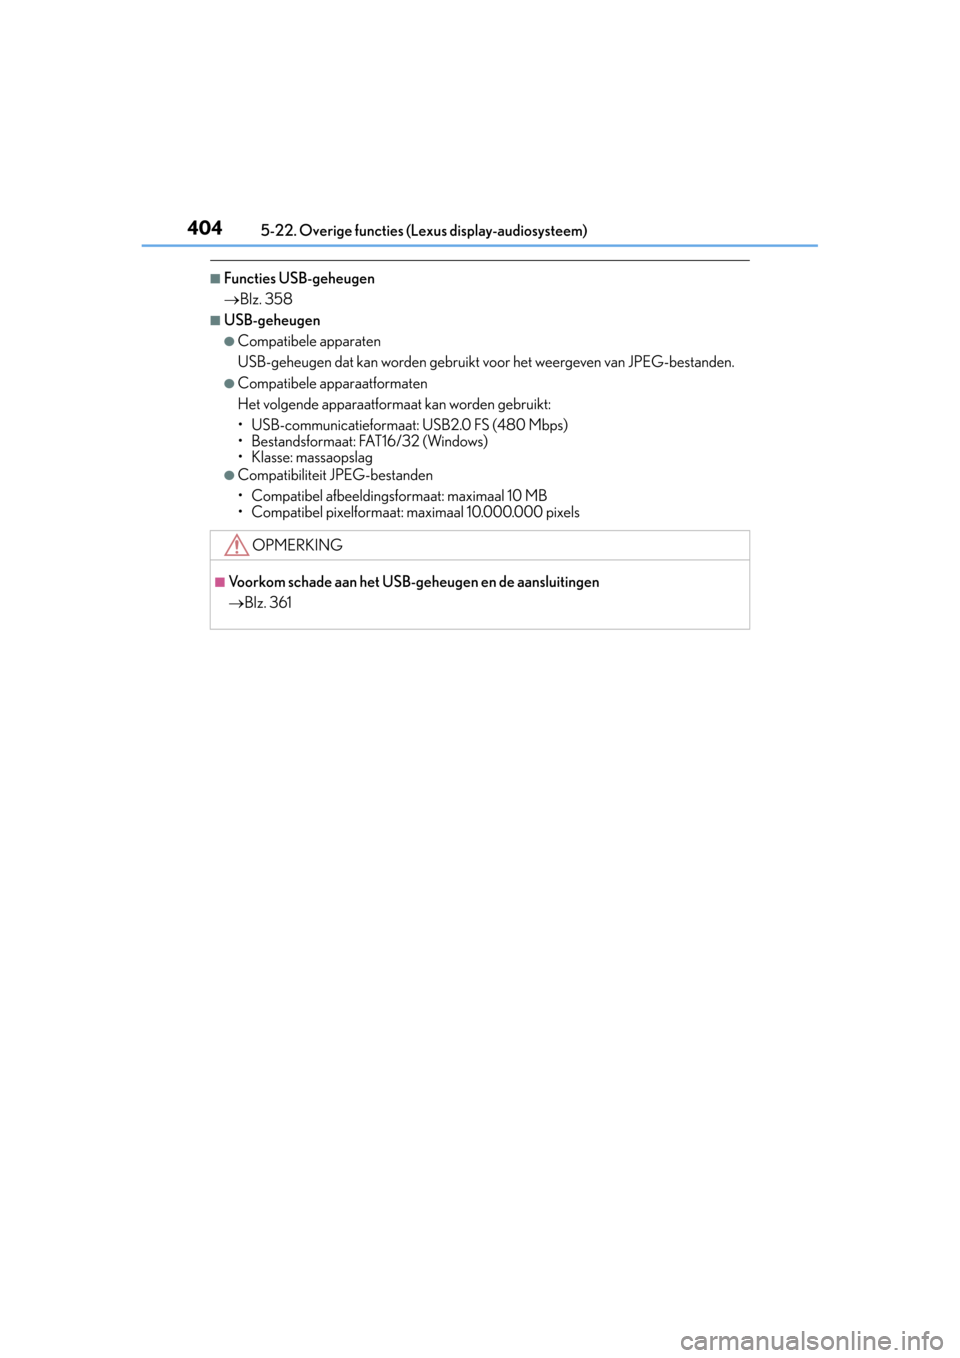 Lexus CT200h 2014  Handleiding (in Dutch) 4045-22. Overige functies (Lexus display-audiosysteem)
CT200h_OM_OM76135E_(EE)
■Functies USB-geheugen
Blz. 358
■USB-geheugen
●Compatibele apparaten
USB-geheugen dat kan worden gebruikt voor h